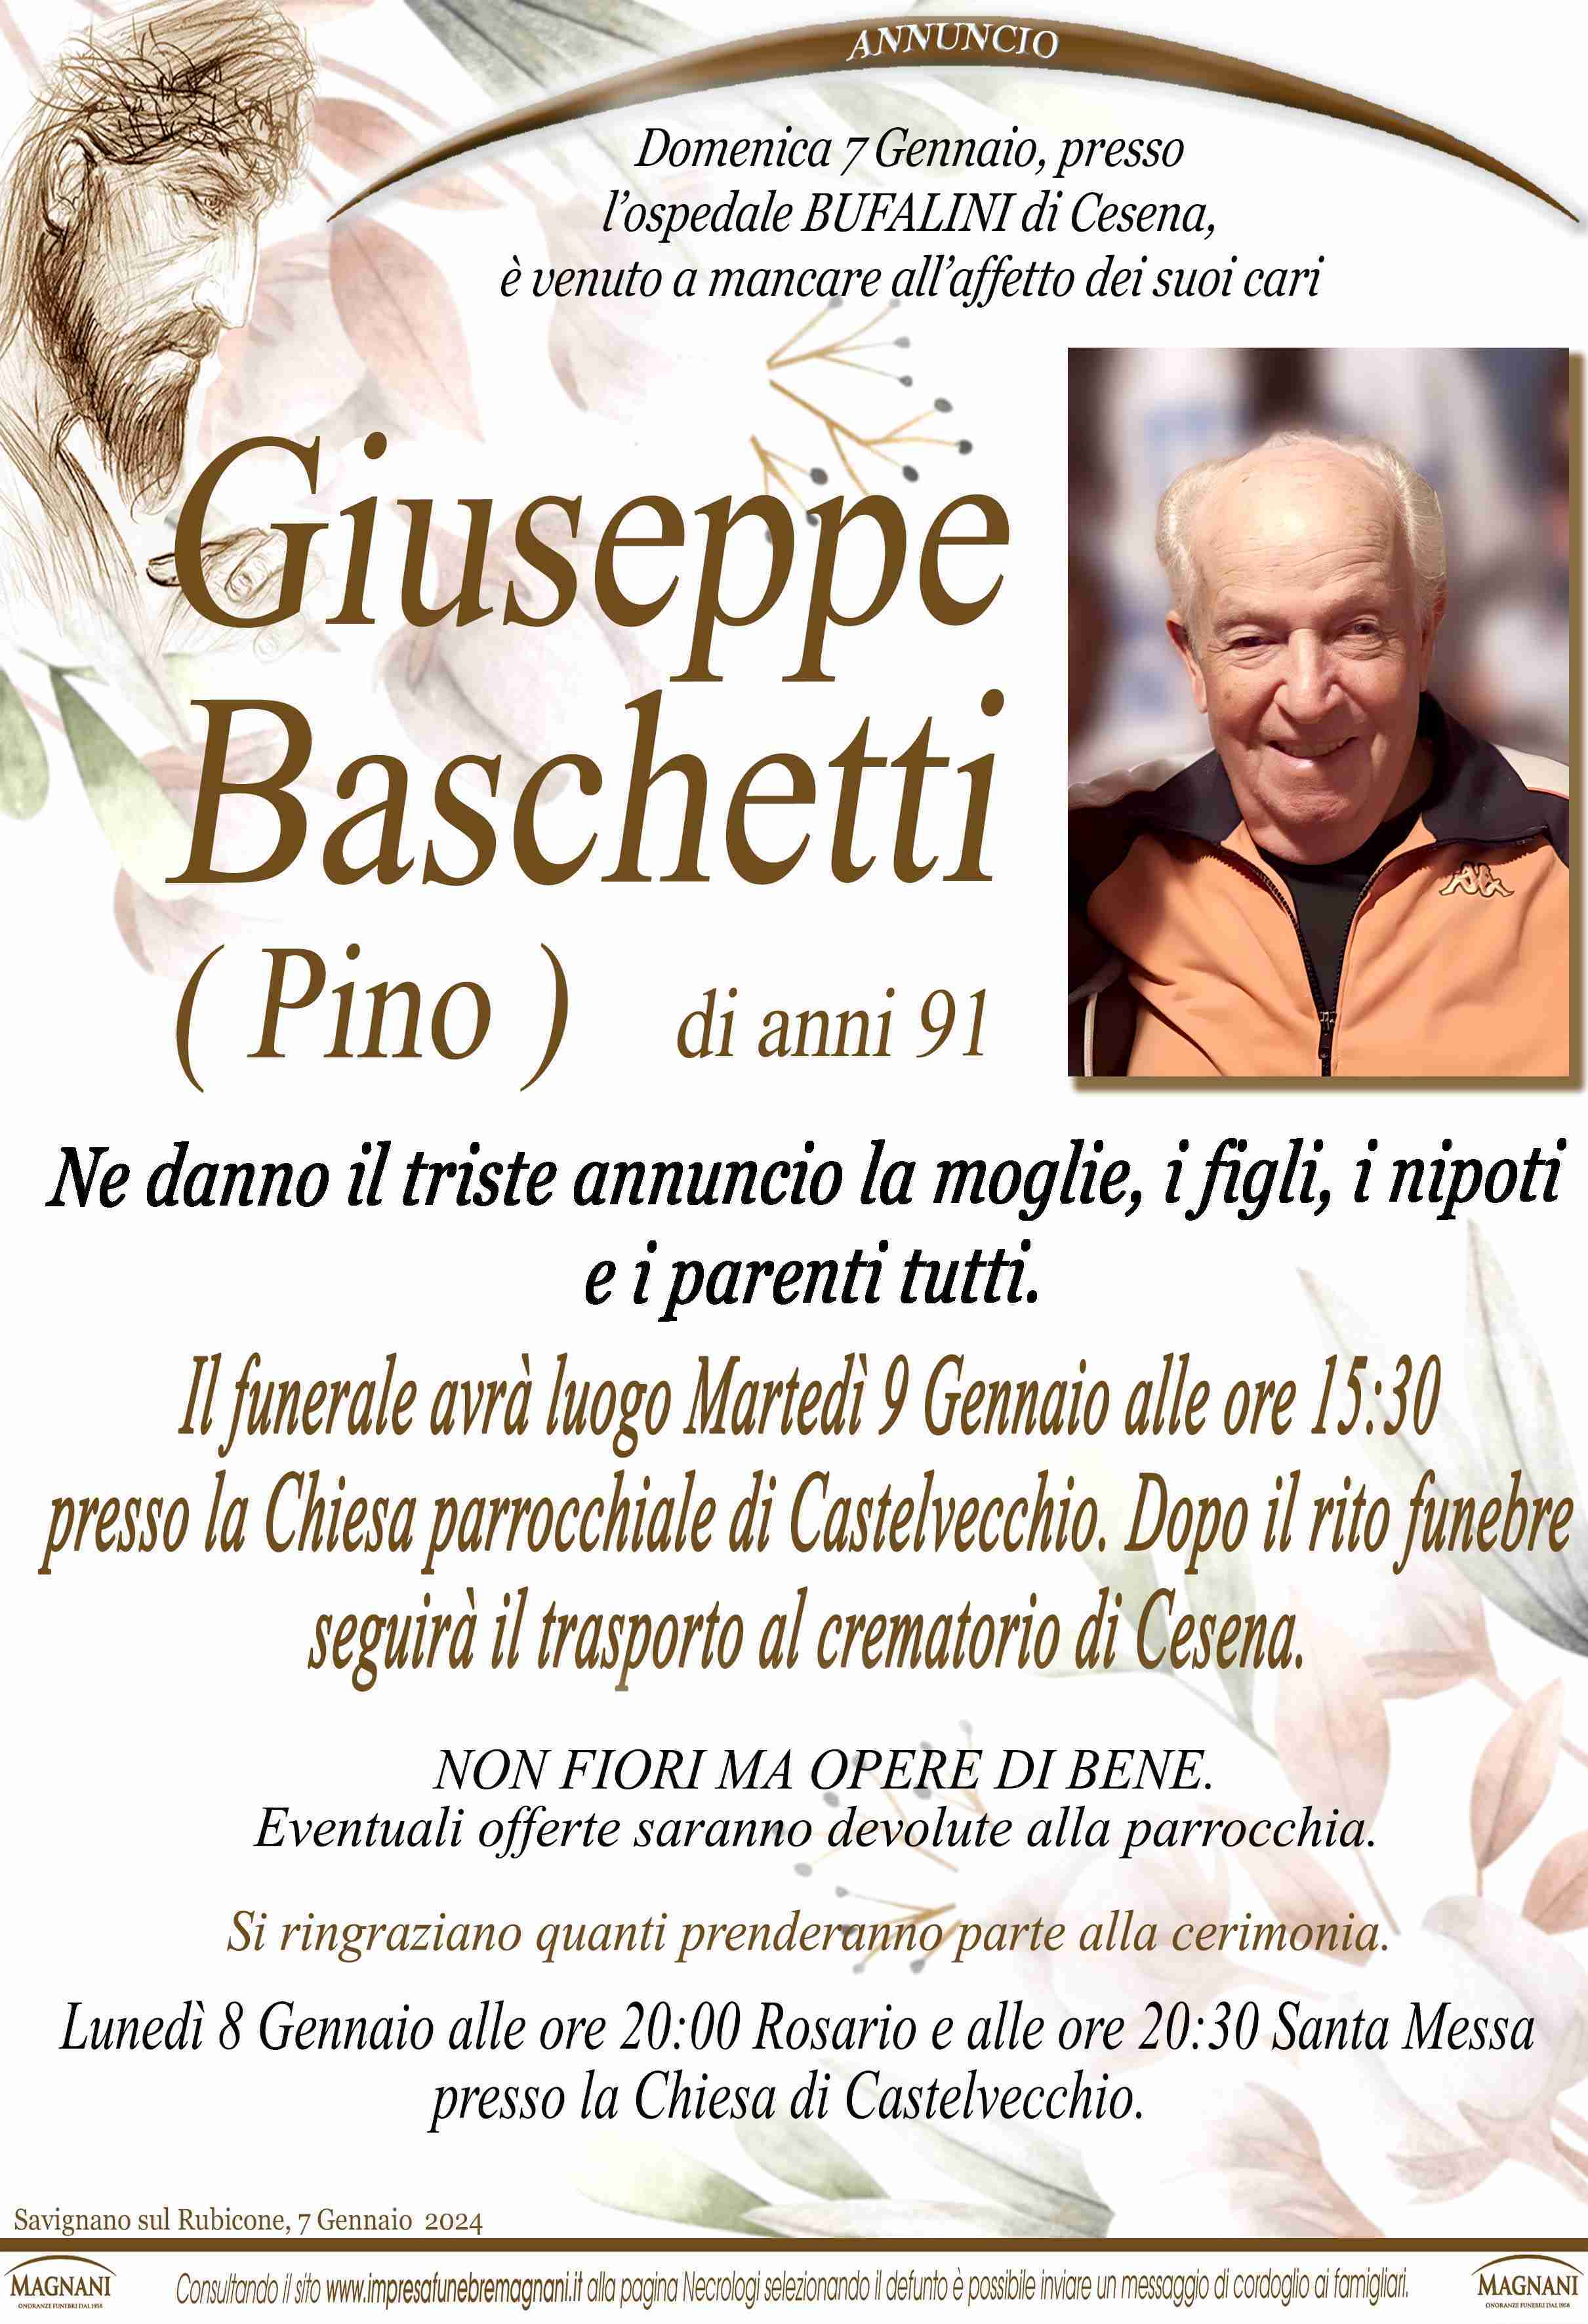 Giuseppe Baschetti